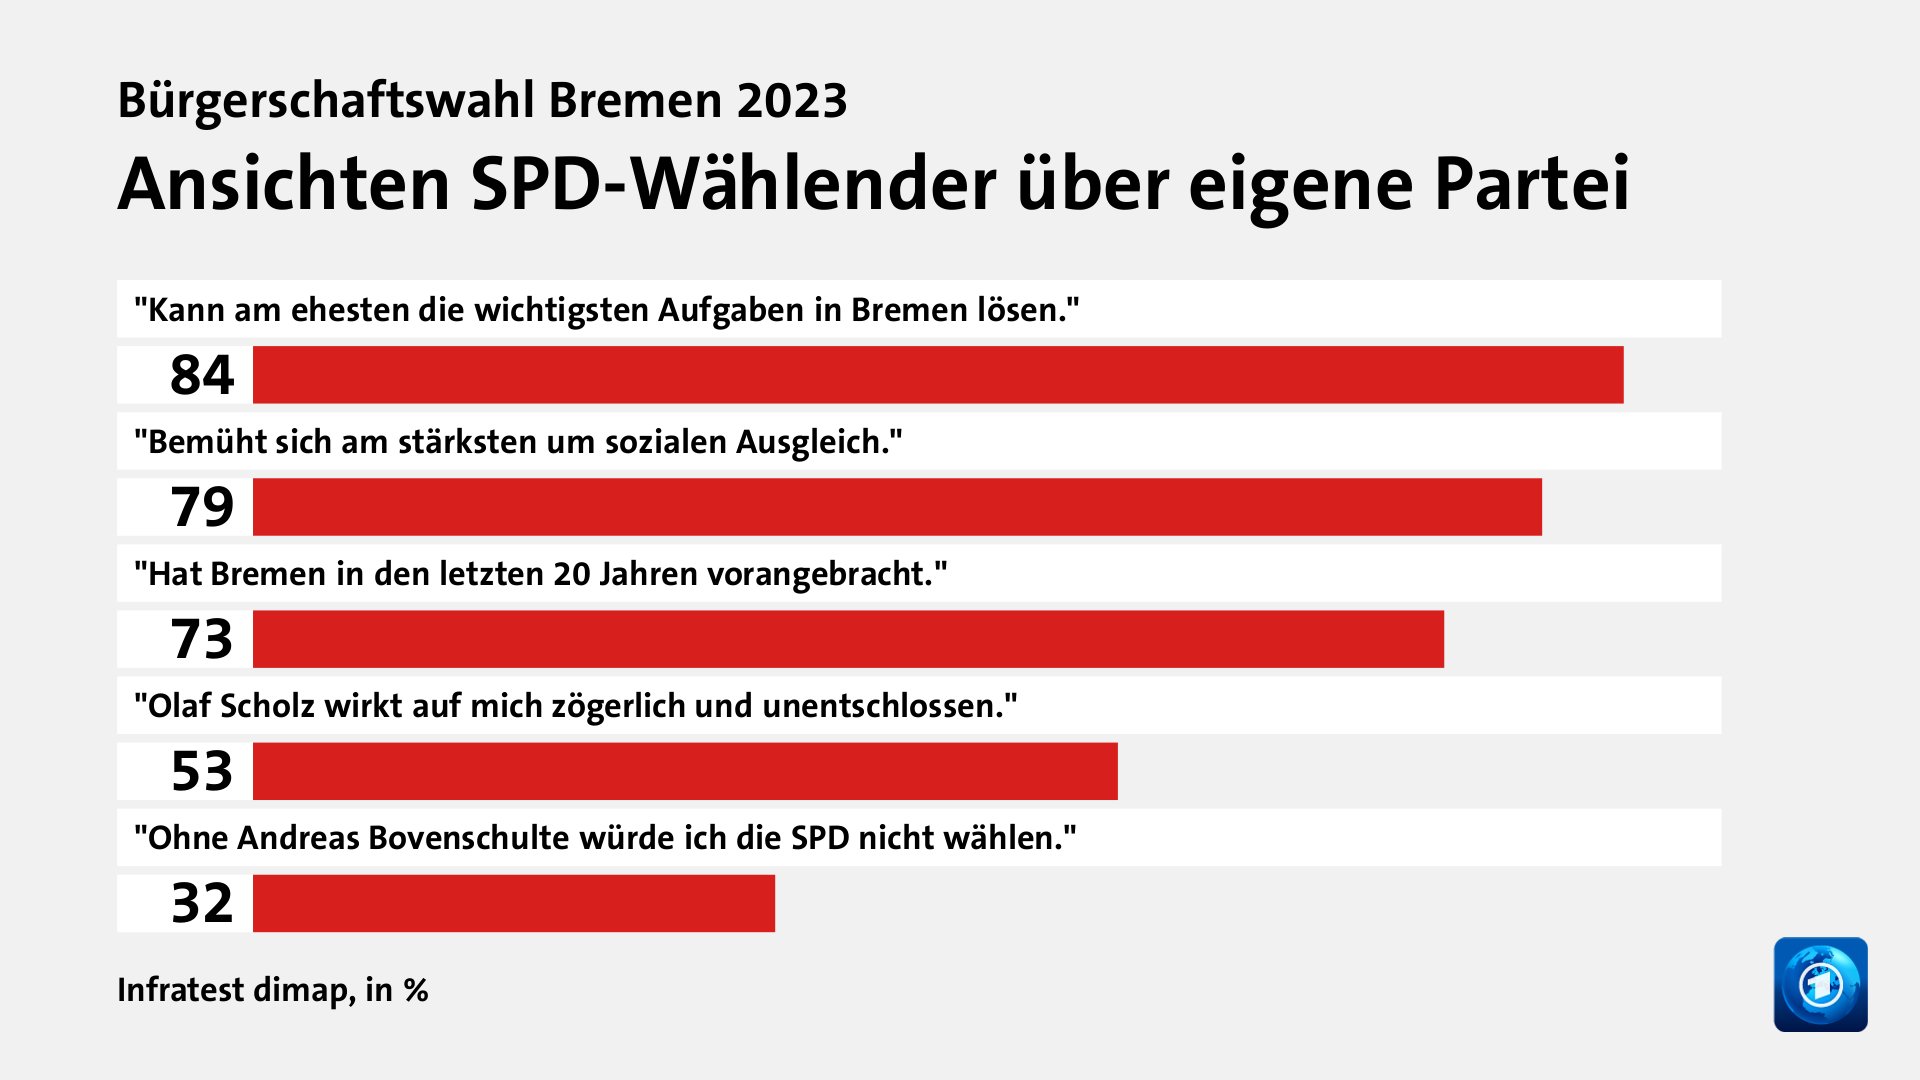 Ansichten SPD-Wählender über eigene Partei, in %: 